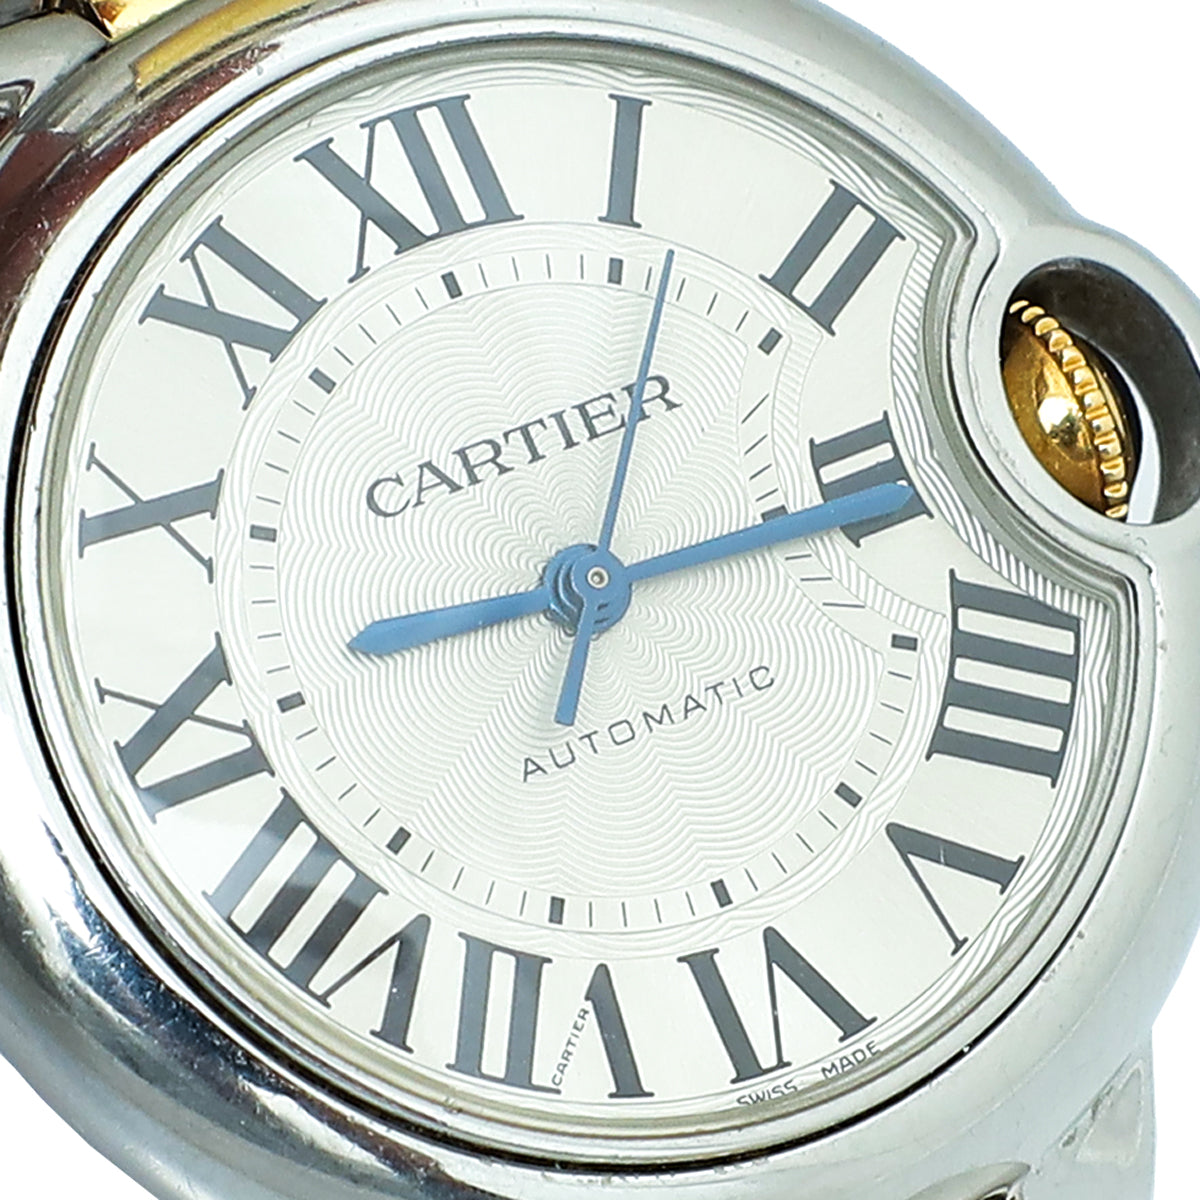 Cartier Steel Yellow Gold Ballon Bleu de Cartier Automatic 33mm Watch